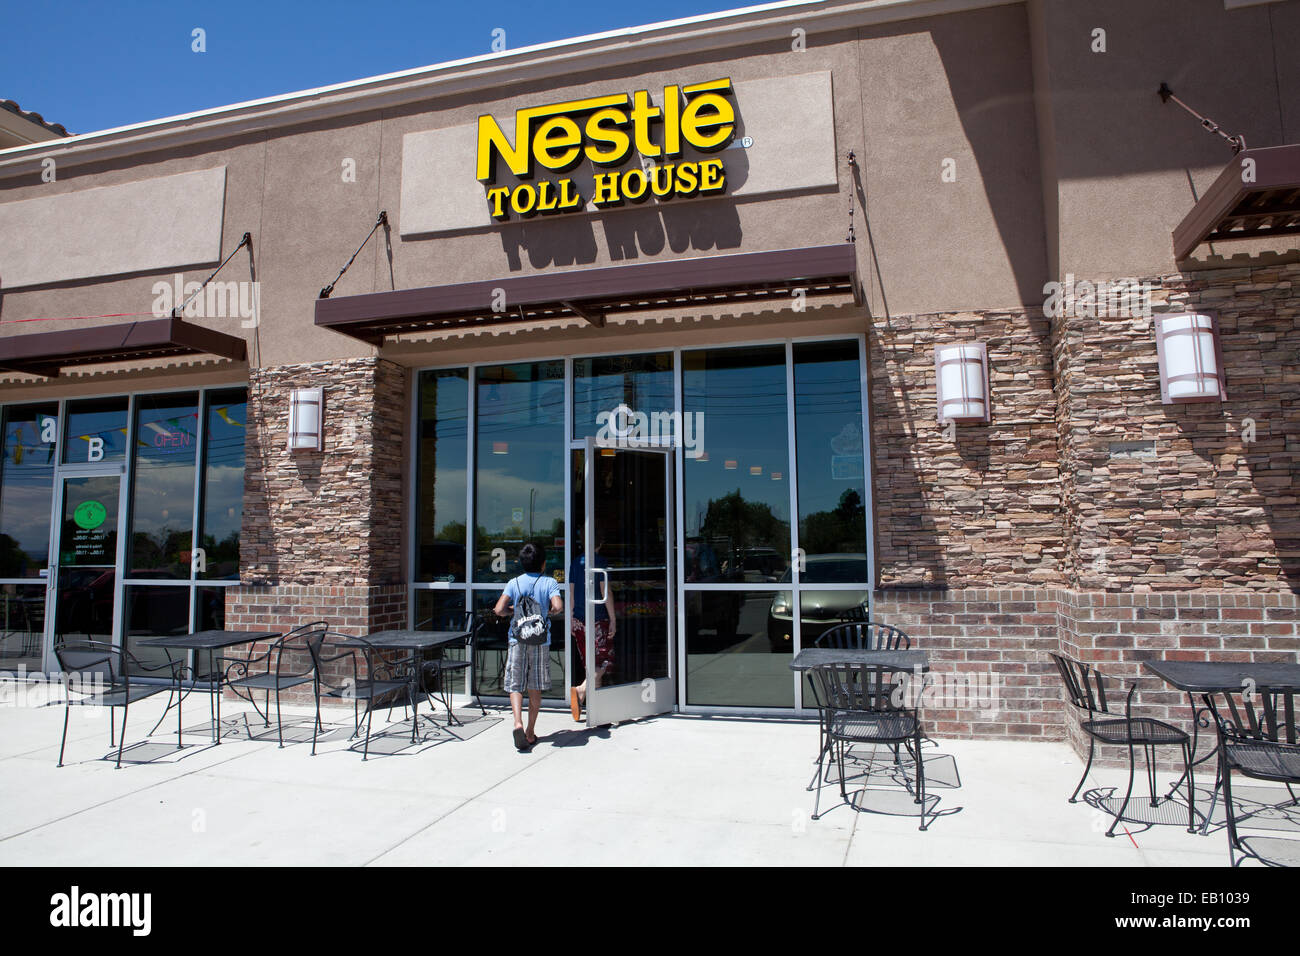 Nestle Toll House cookies y tienda de helados, Nuevo México, EE.UU. Foto de stock